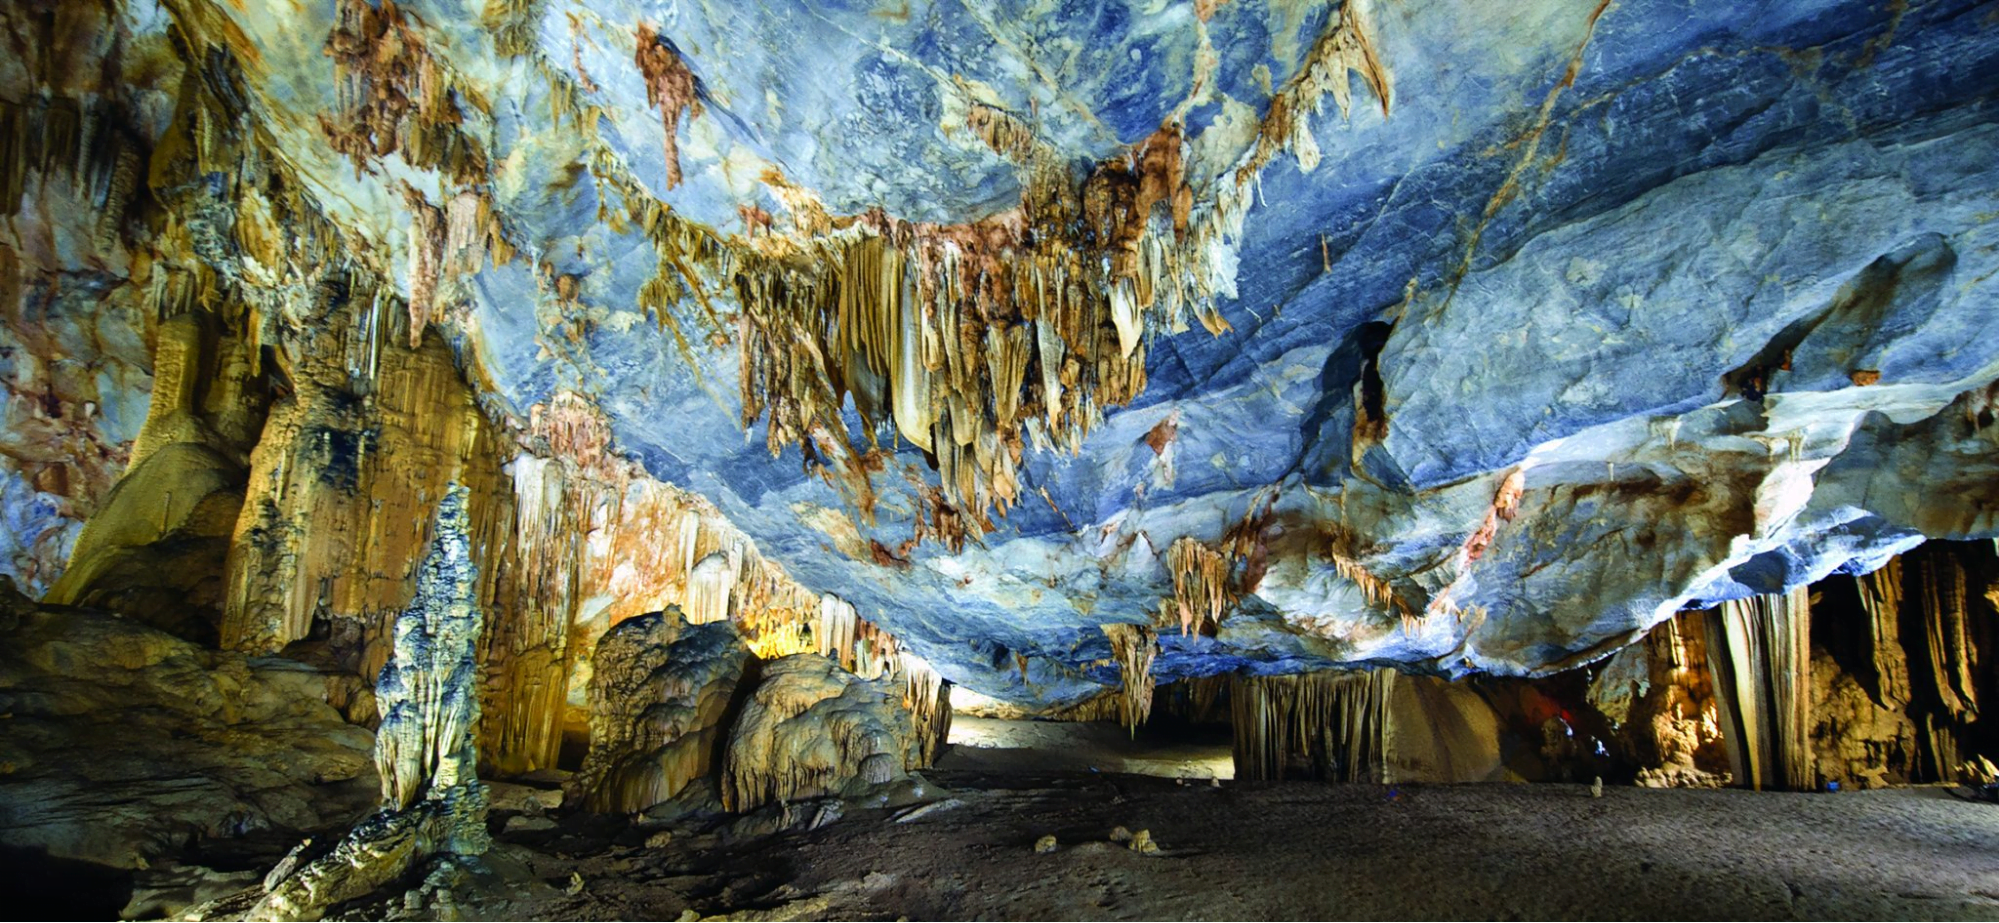 Paradise cave in Phong Nha Ke Bang national park